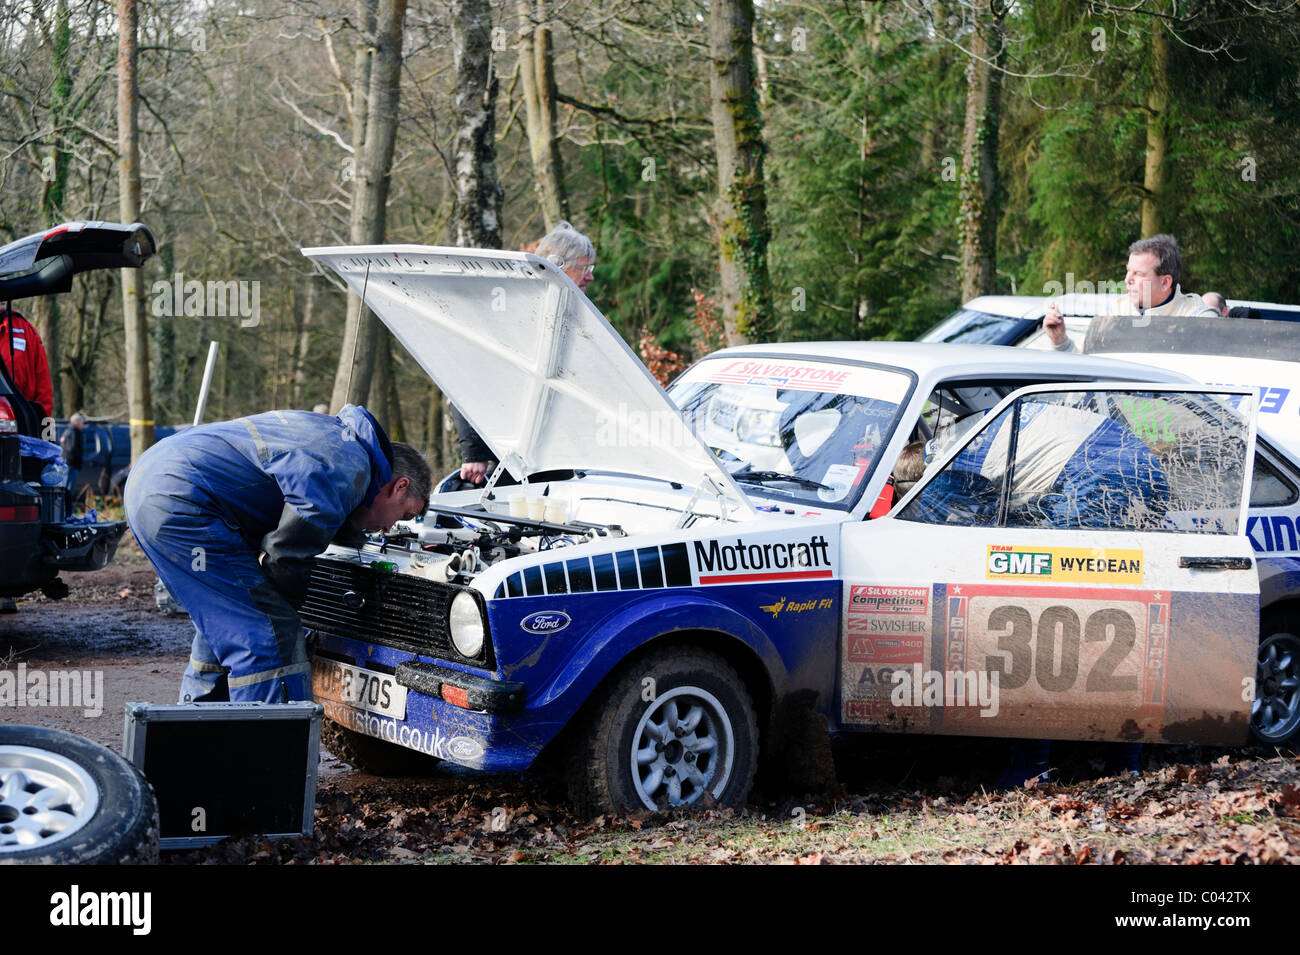 Wyedean auto da rally sul territorio della commissione forestale di case del parlato nella Foresta di Dean UK. Manutenzione meccanica di pit-stop rally car Foto Stock